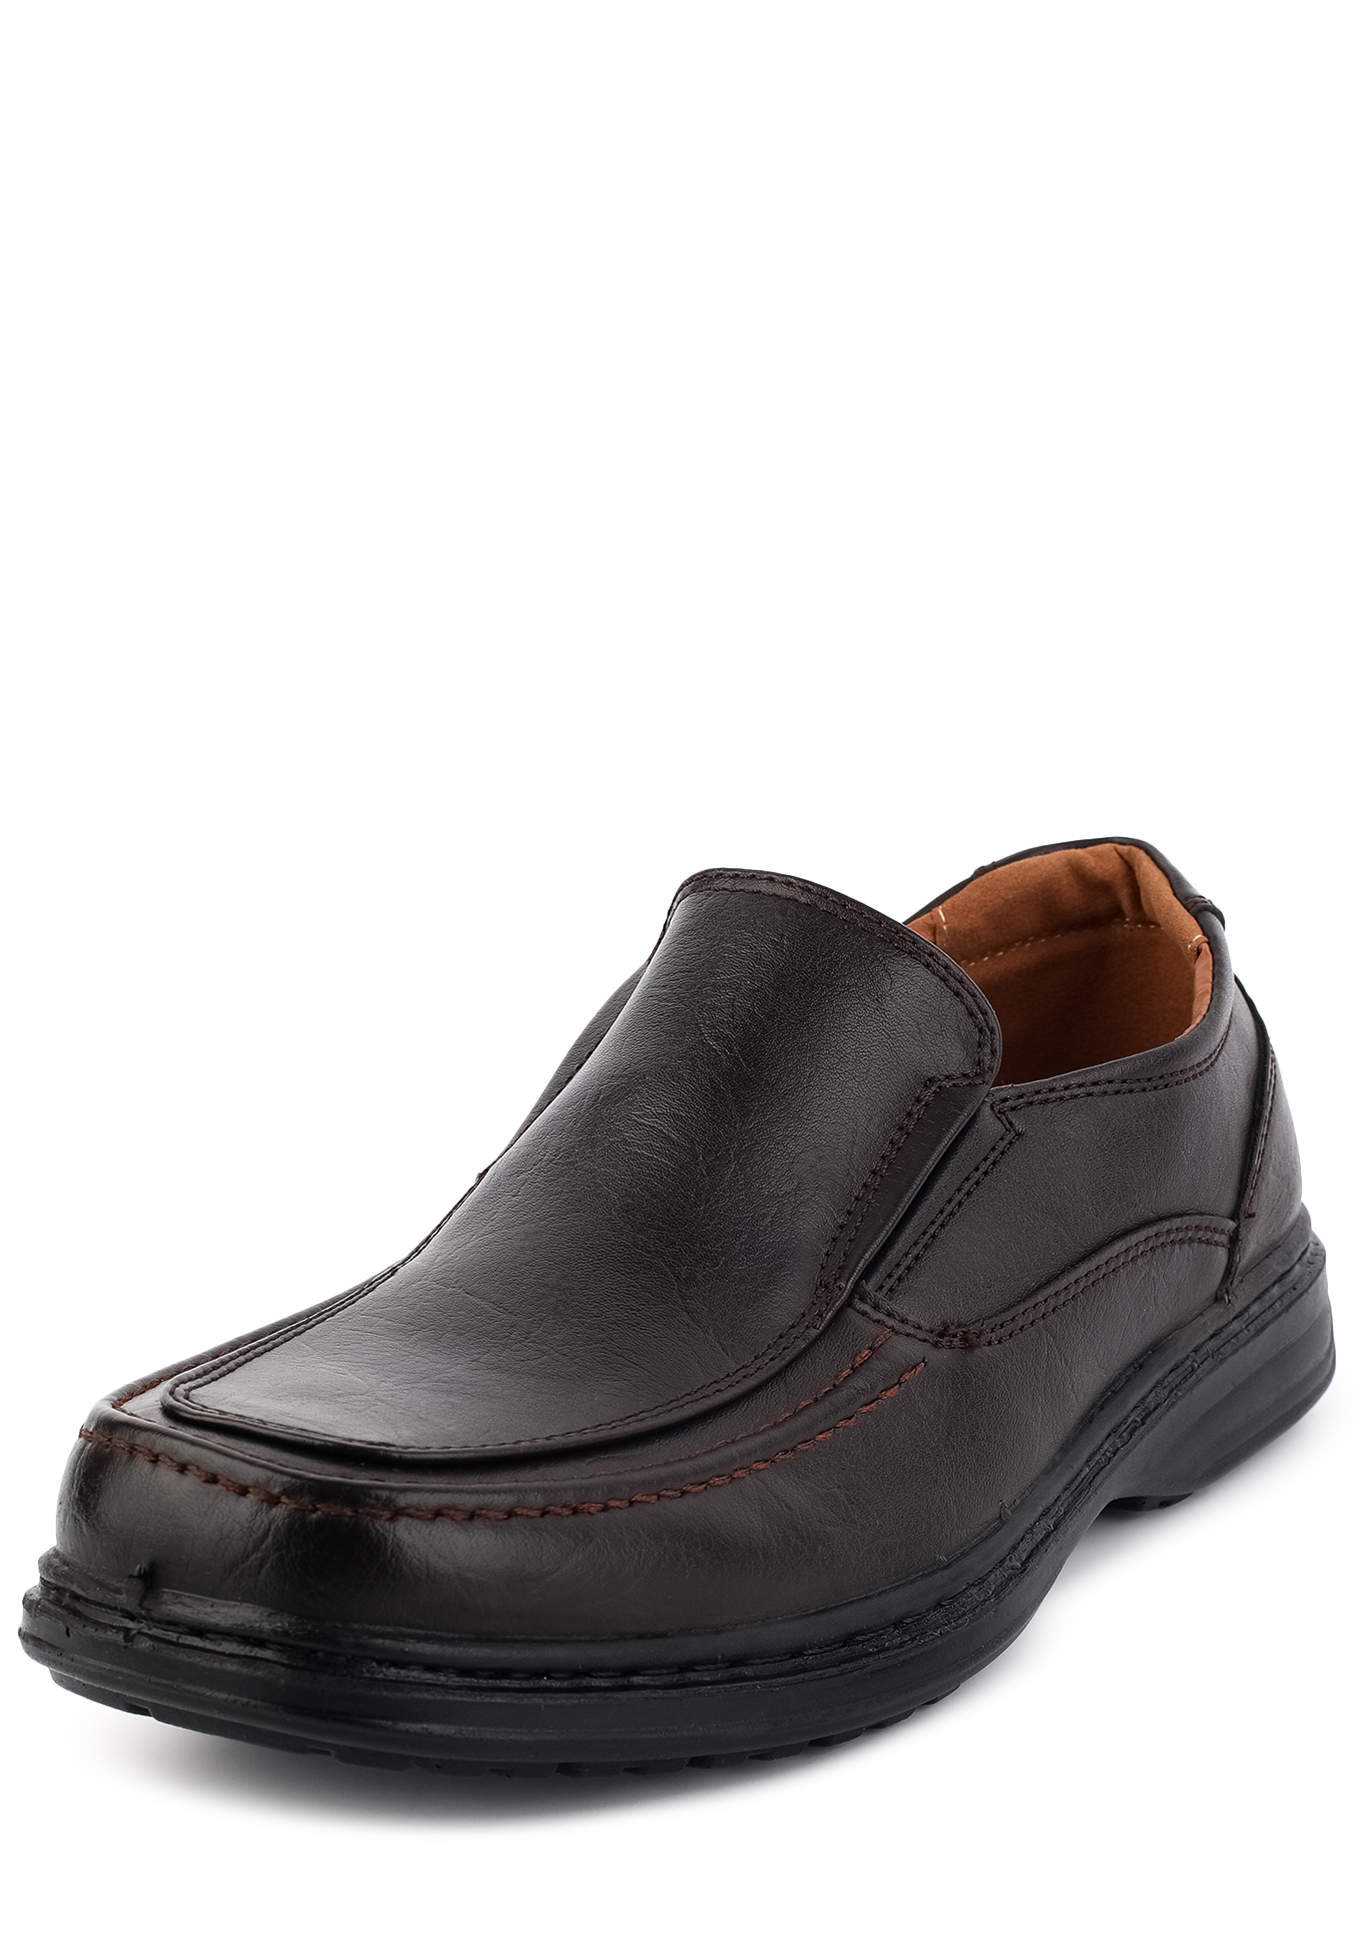 Туфли мужские "Арнольд" Trioshoes, размер 40, цвет черный